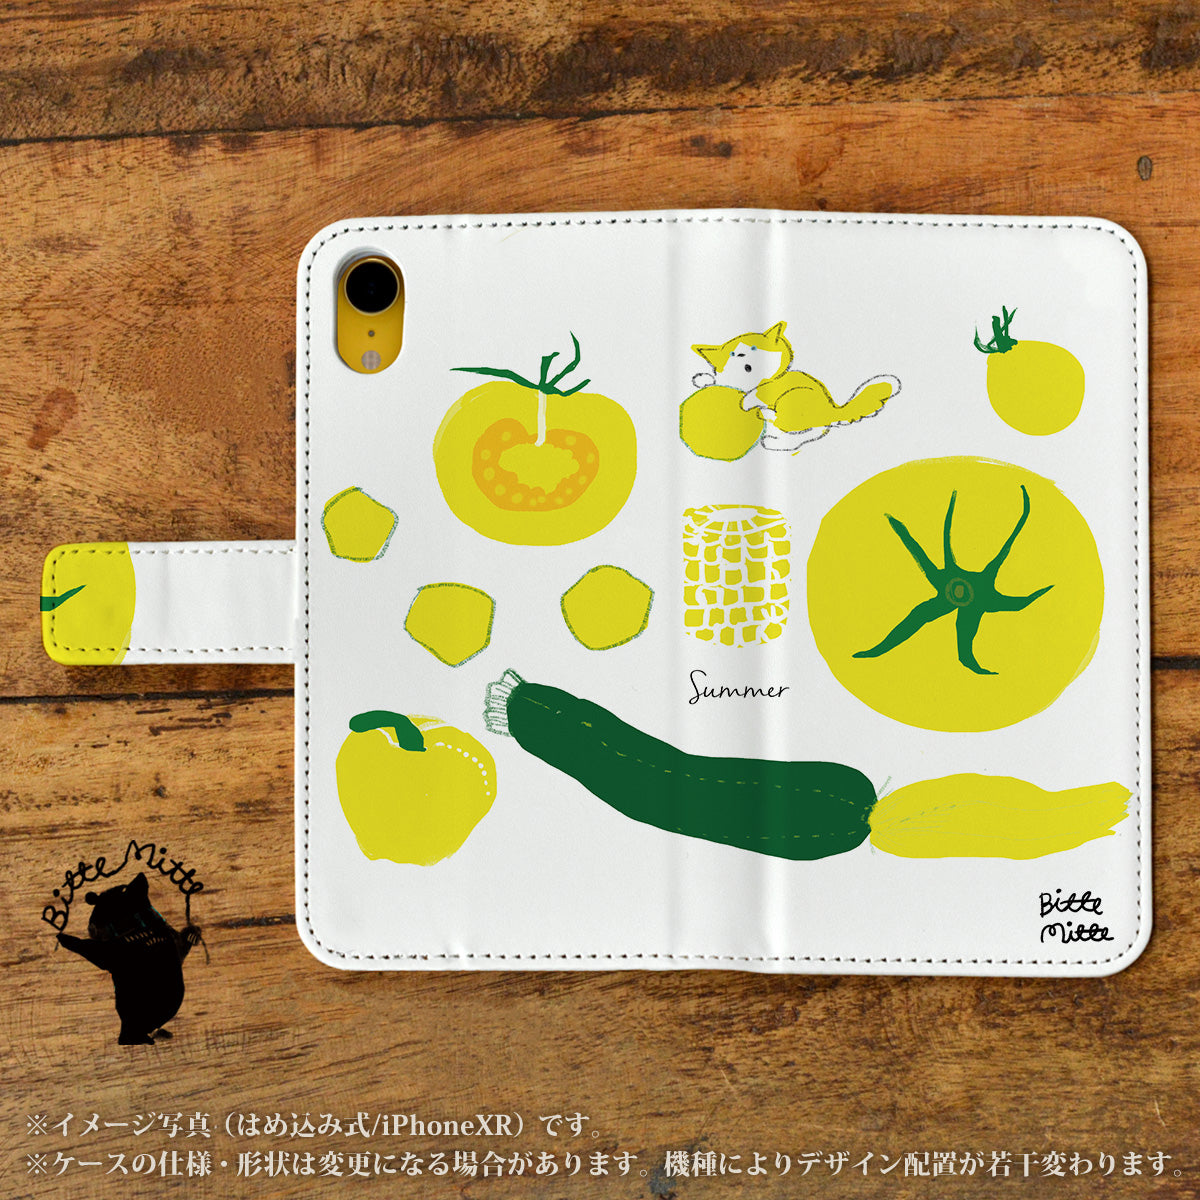 Bitte Mitte!ブランドのデザイン画を印刷したはめ込み式手帳型スマホケース「猫と夏野菜」のイメージ写真です。機種はiPhoneXRです。